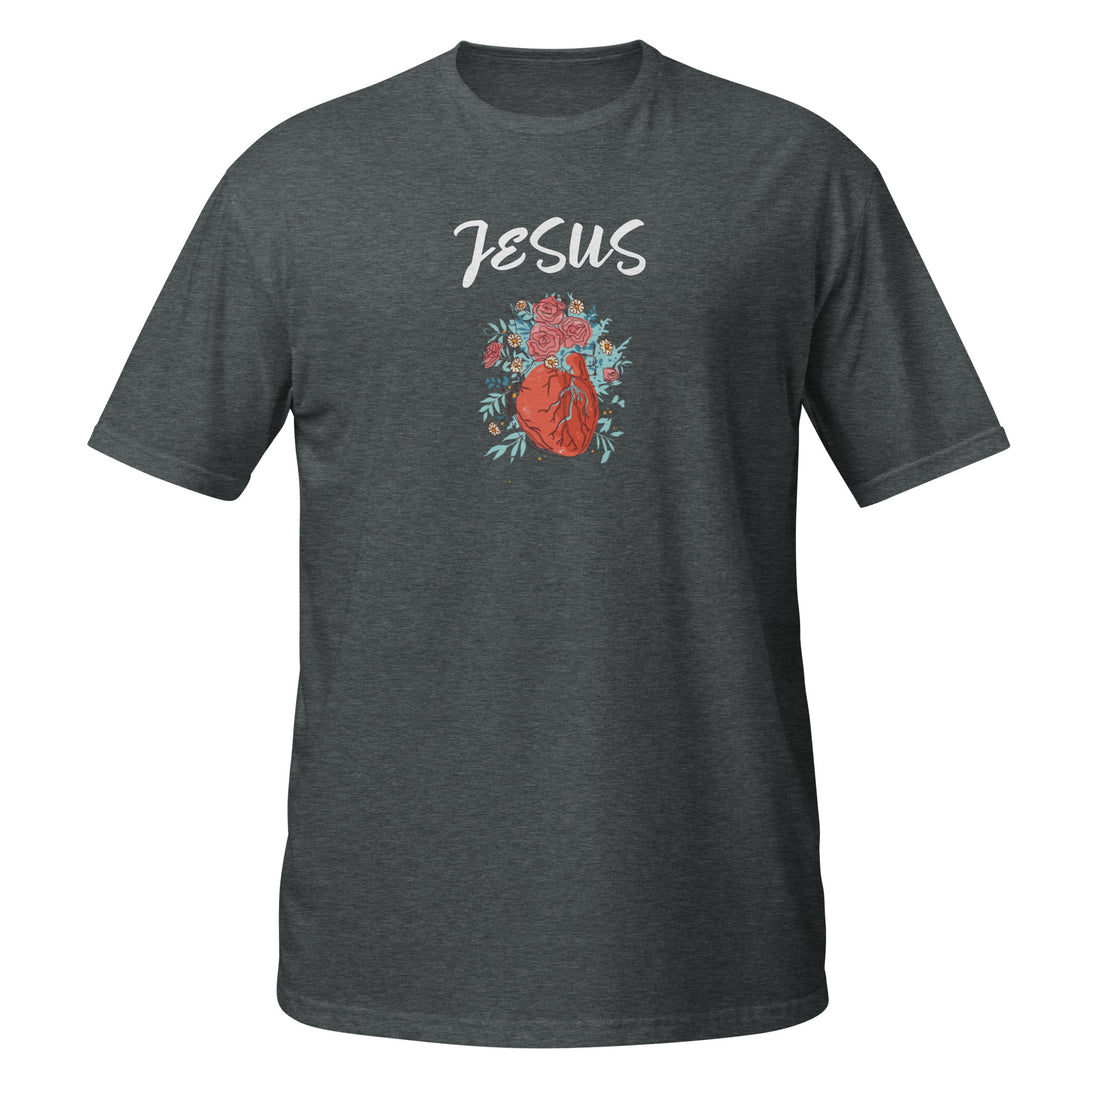 &quot;Heart Jesus&quot; Dark Colors T-Shirt Image: &quot;&